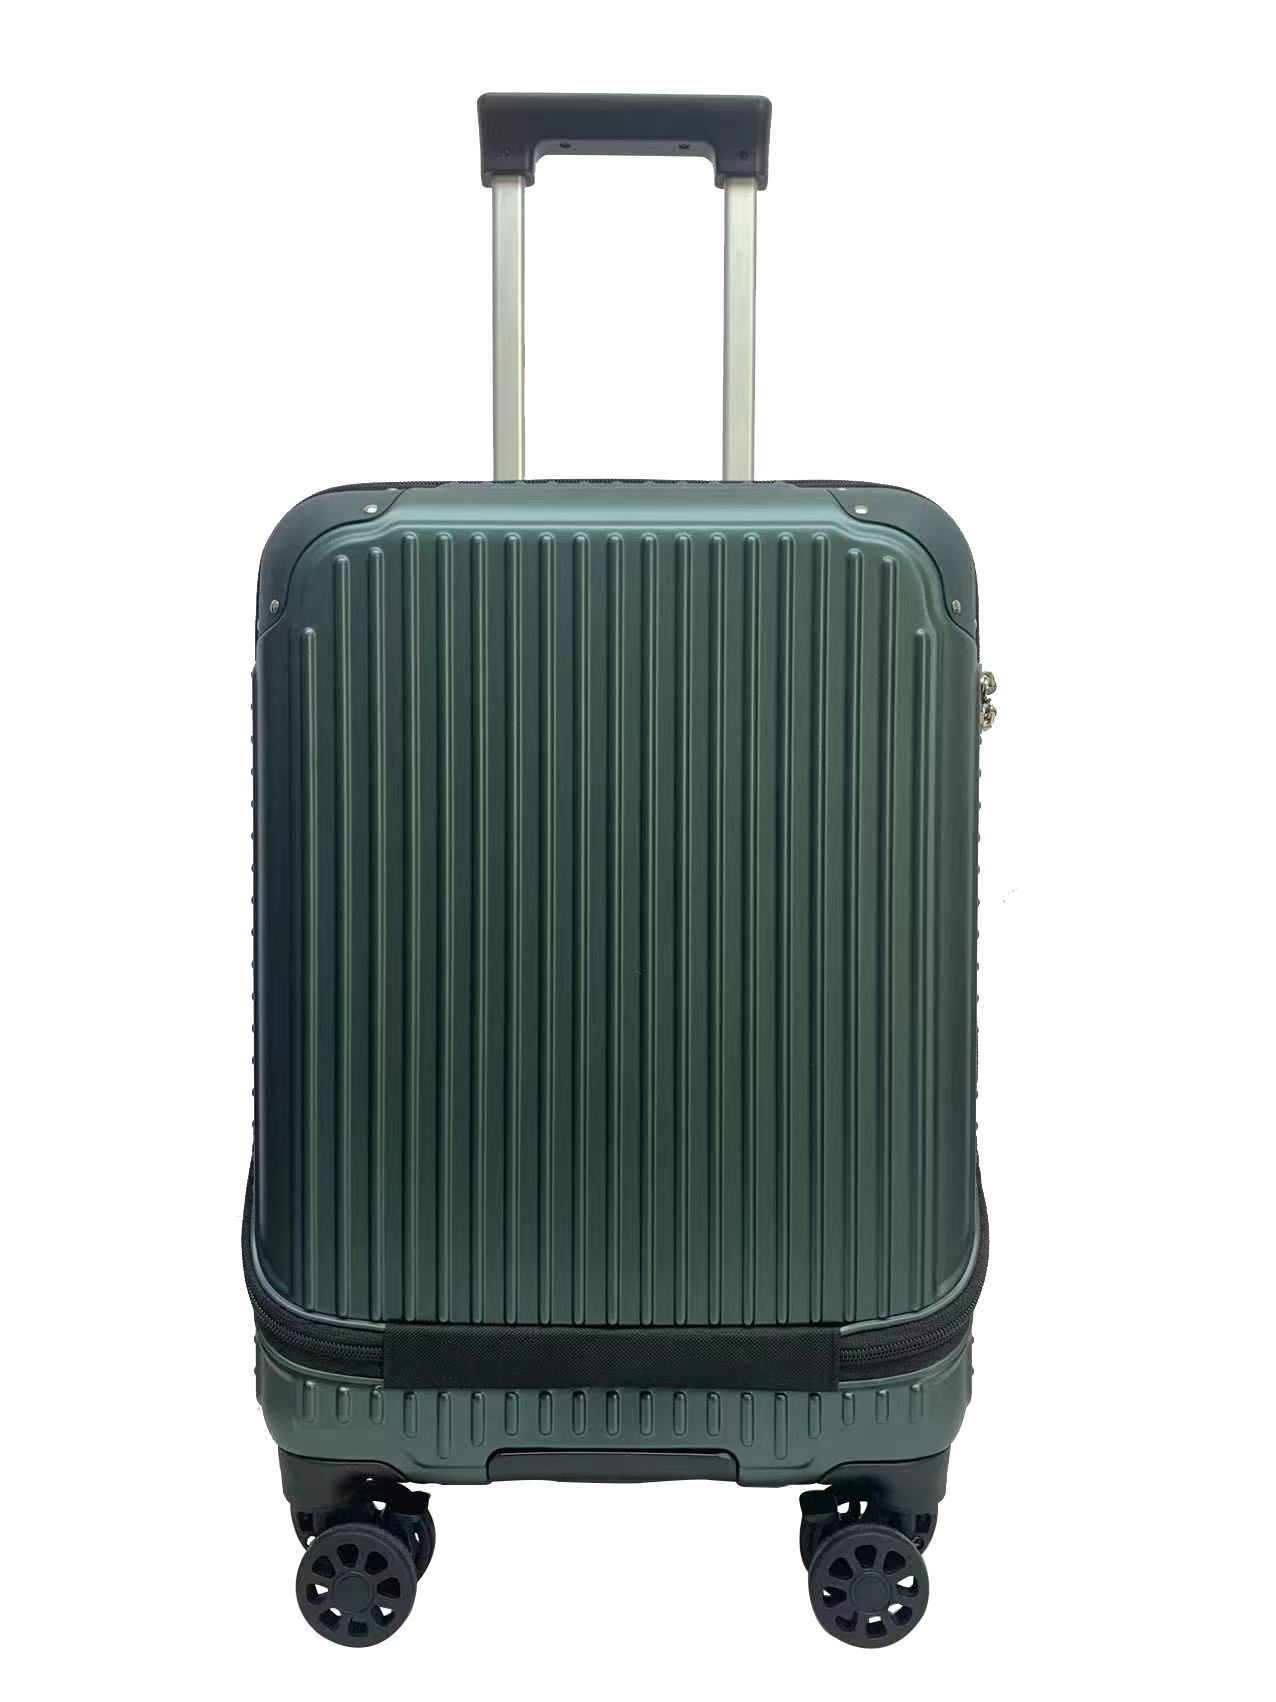 Zhejiang Jays Suitcase Co.,Ltd